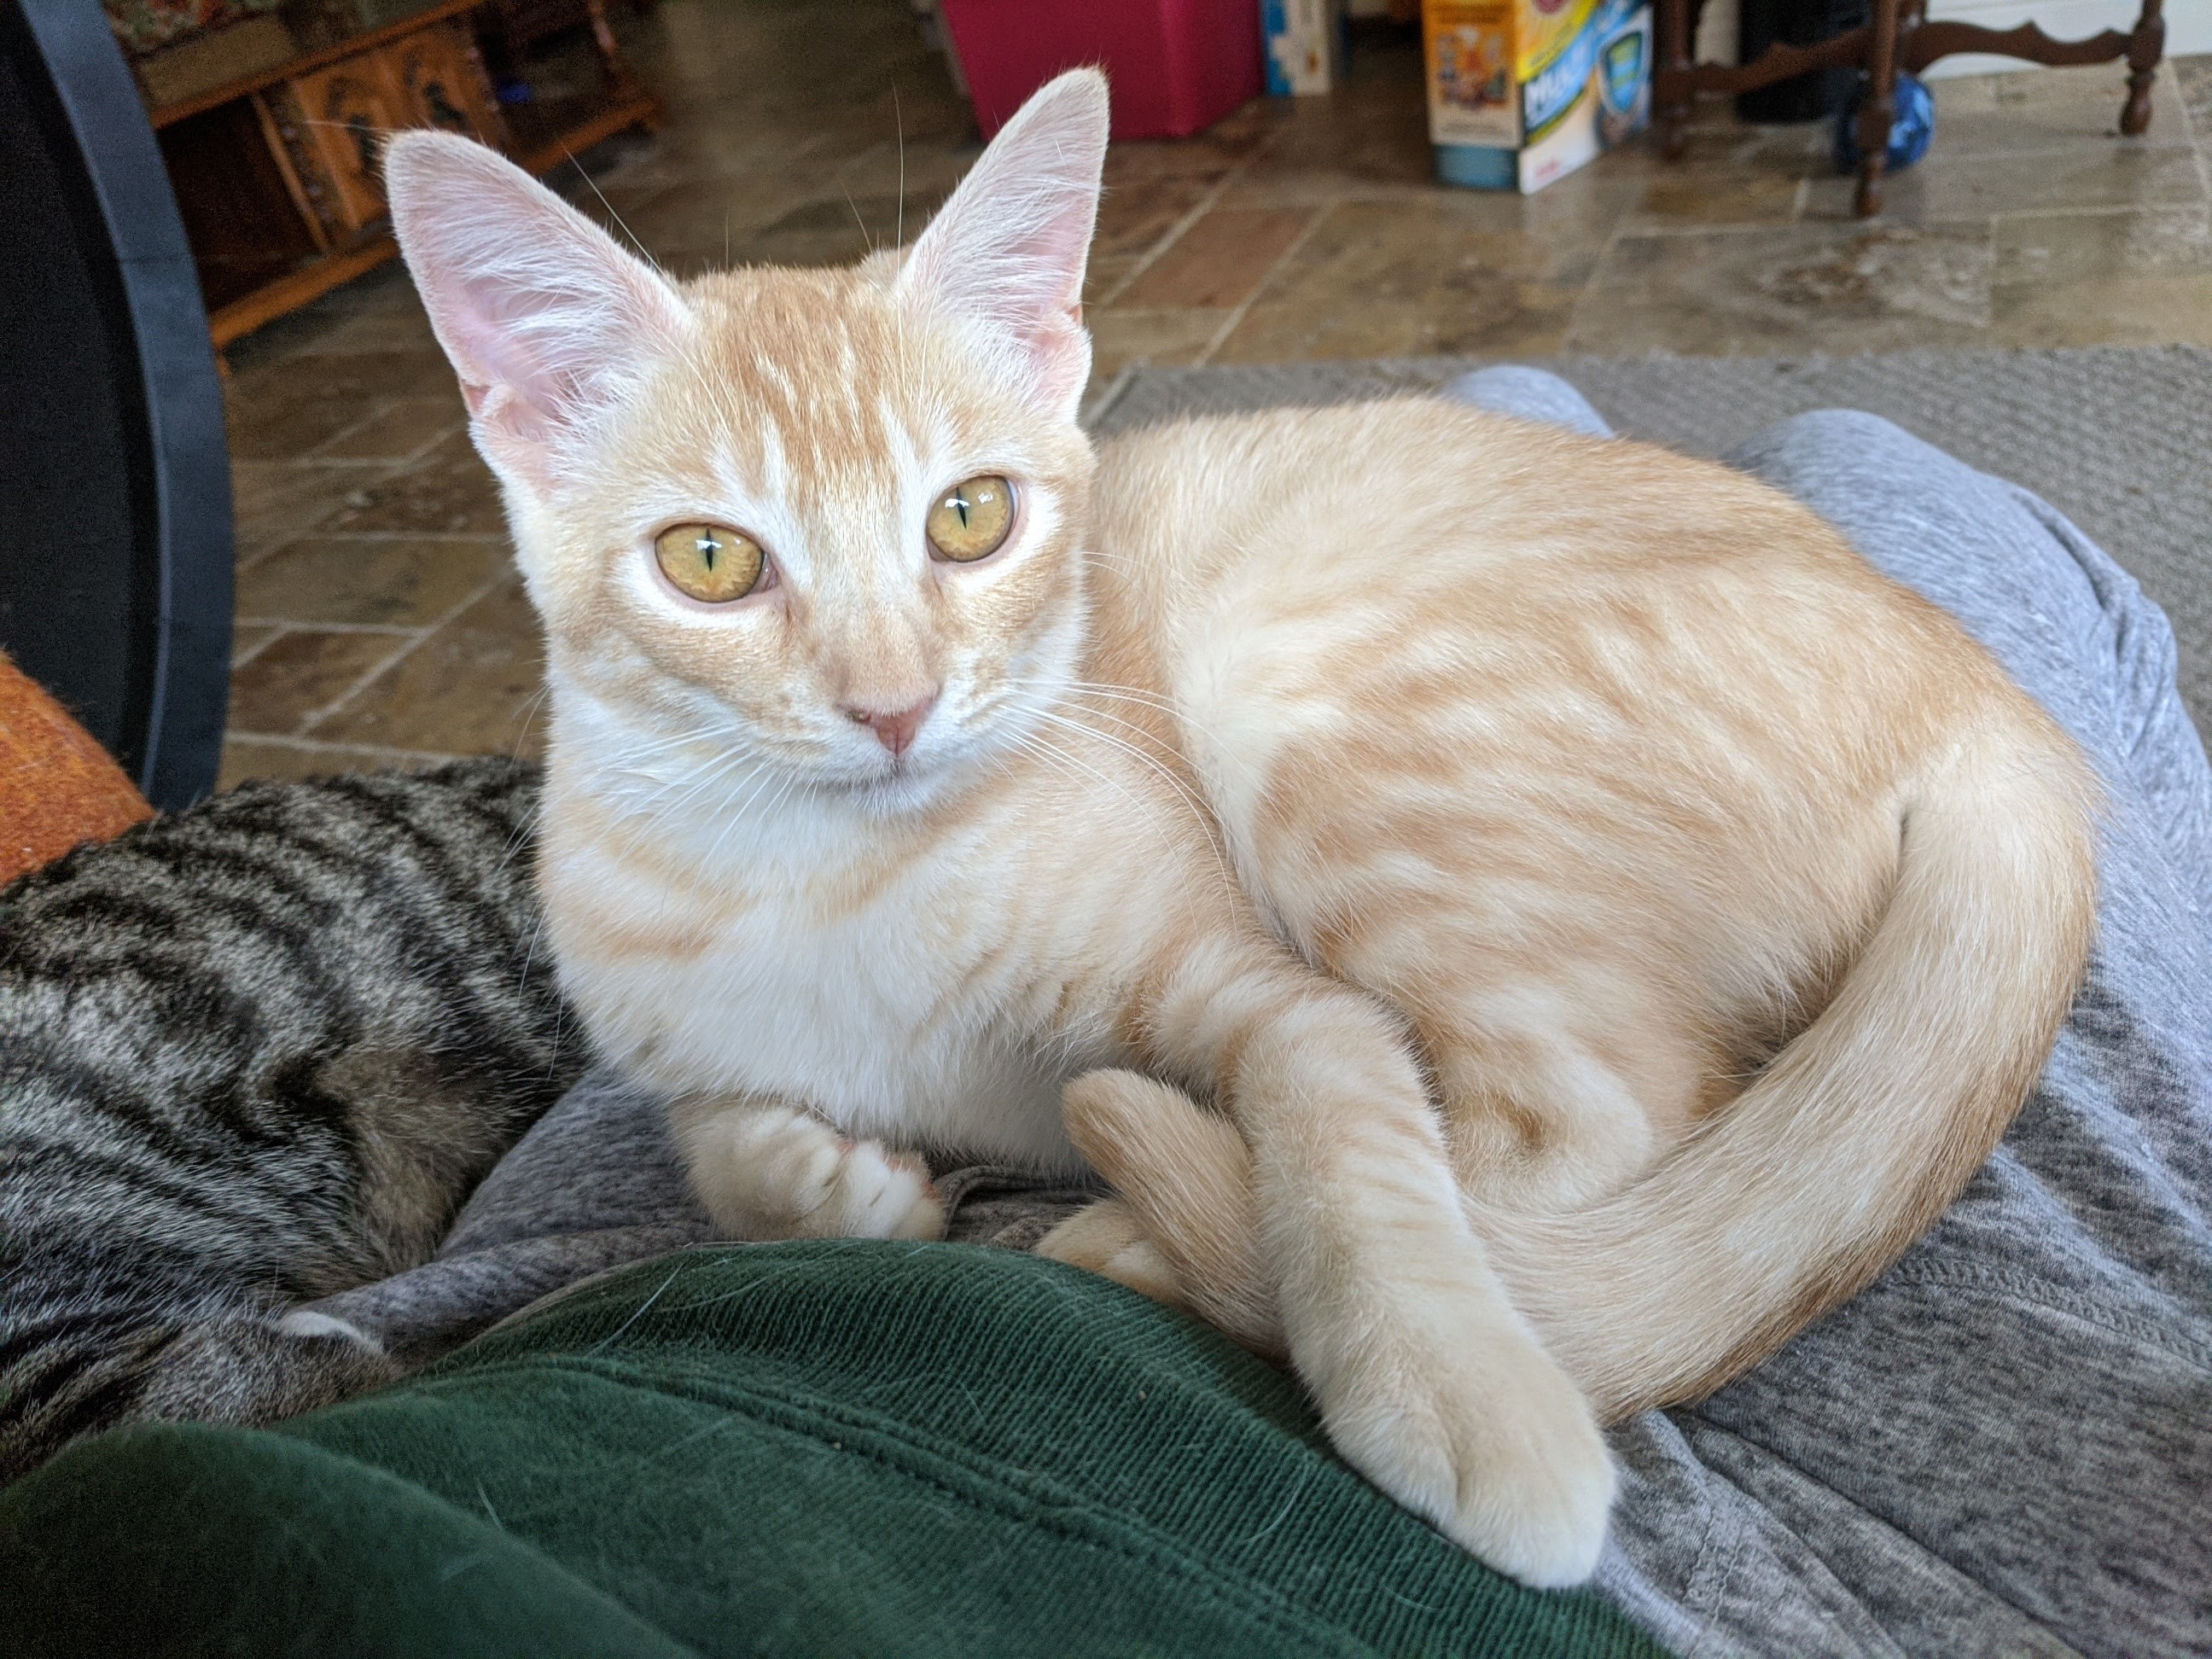 Cat for adoption - Maria - La Habra/Whittier Petco, a ...